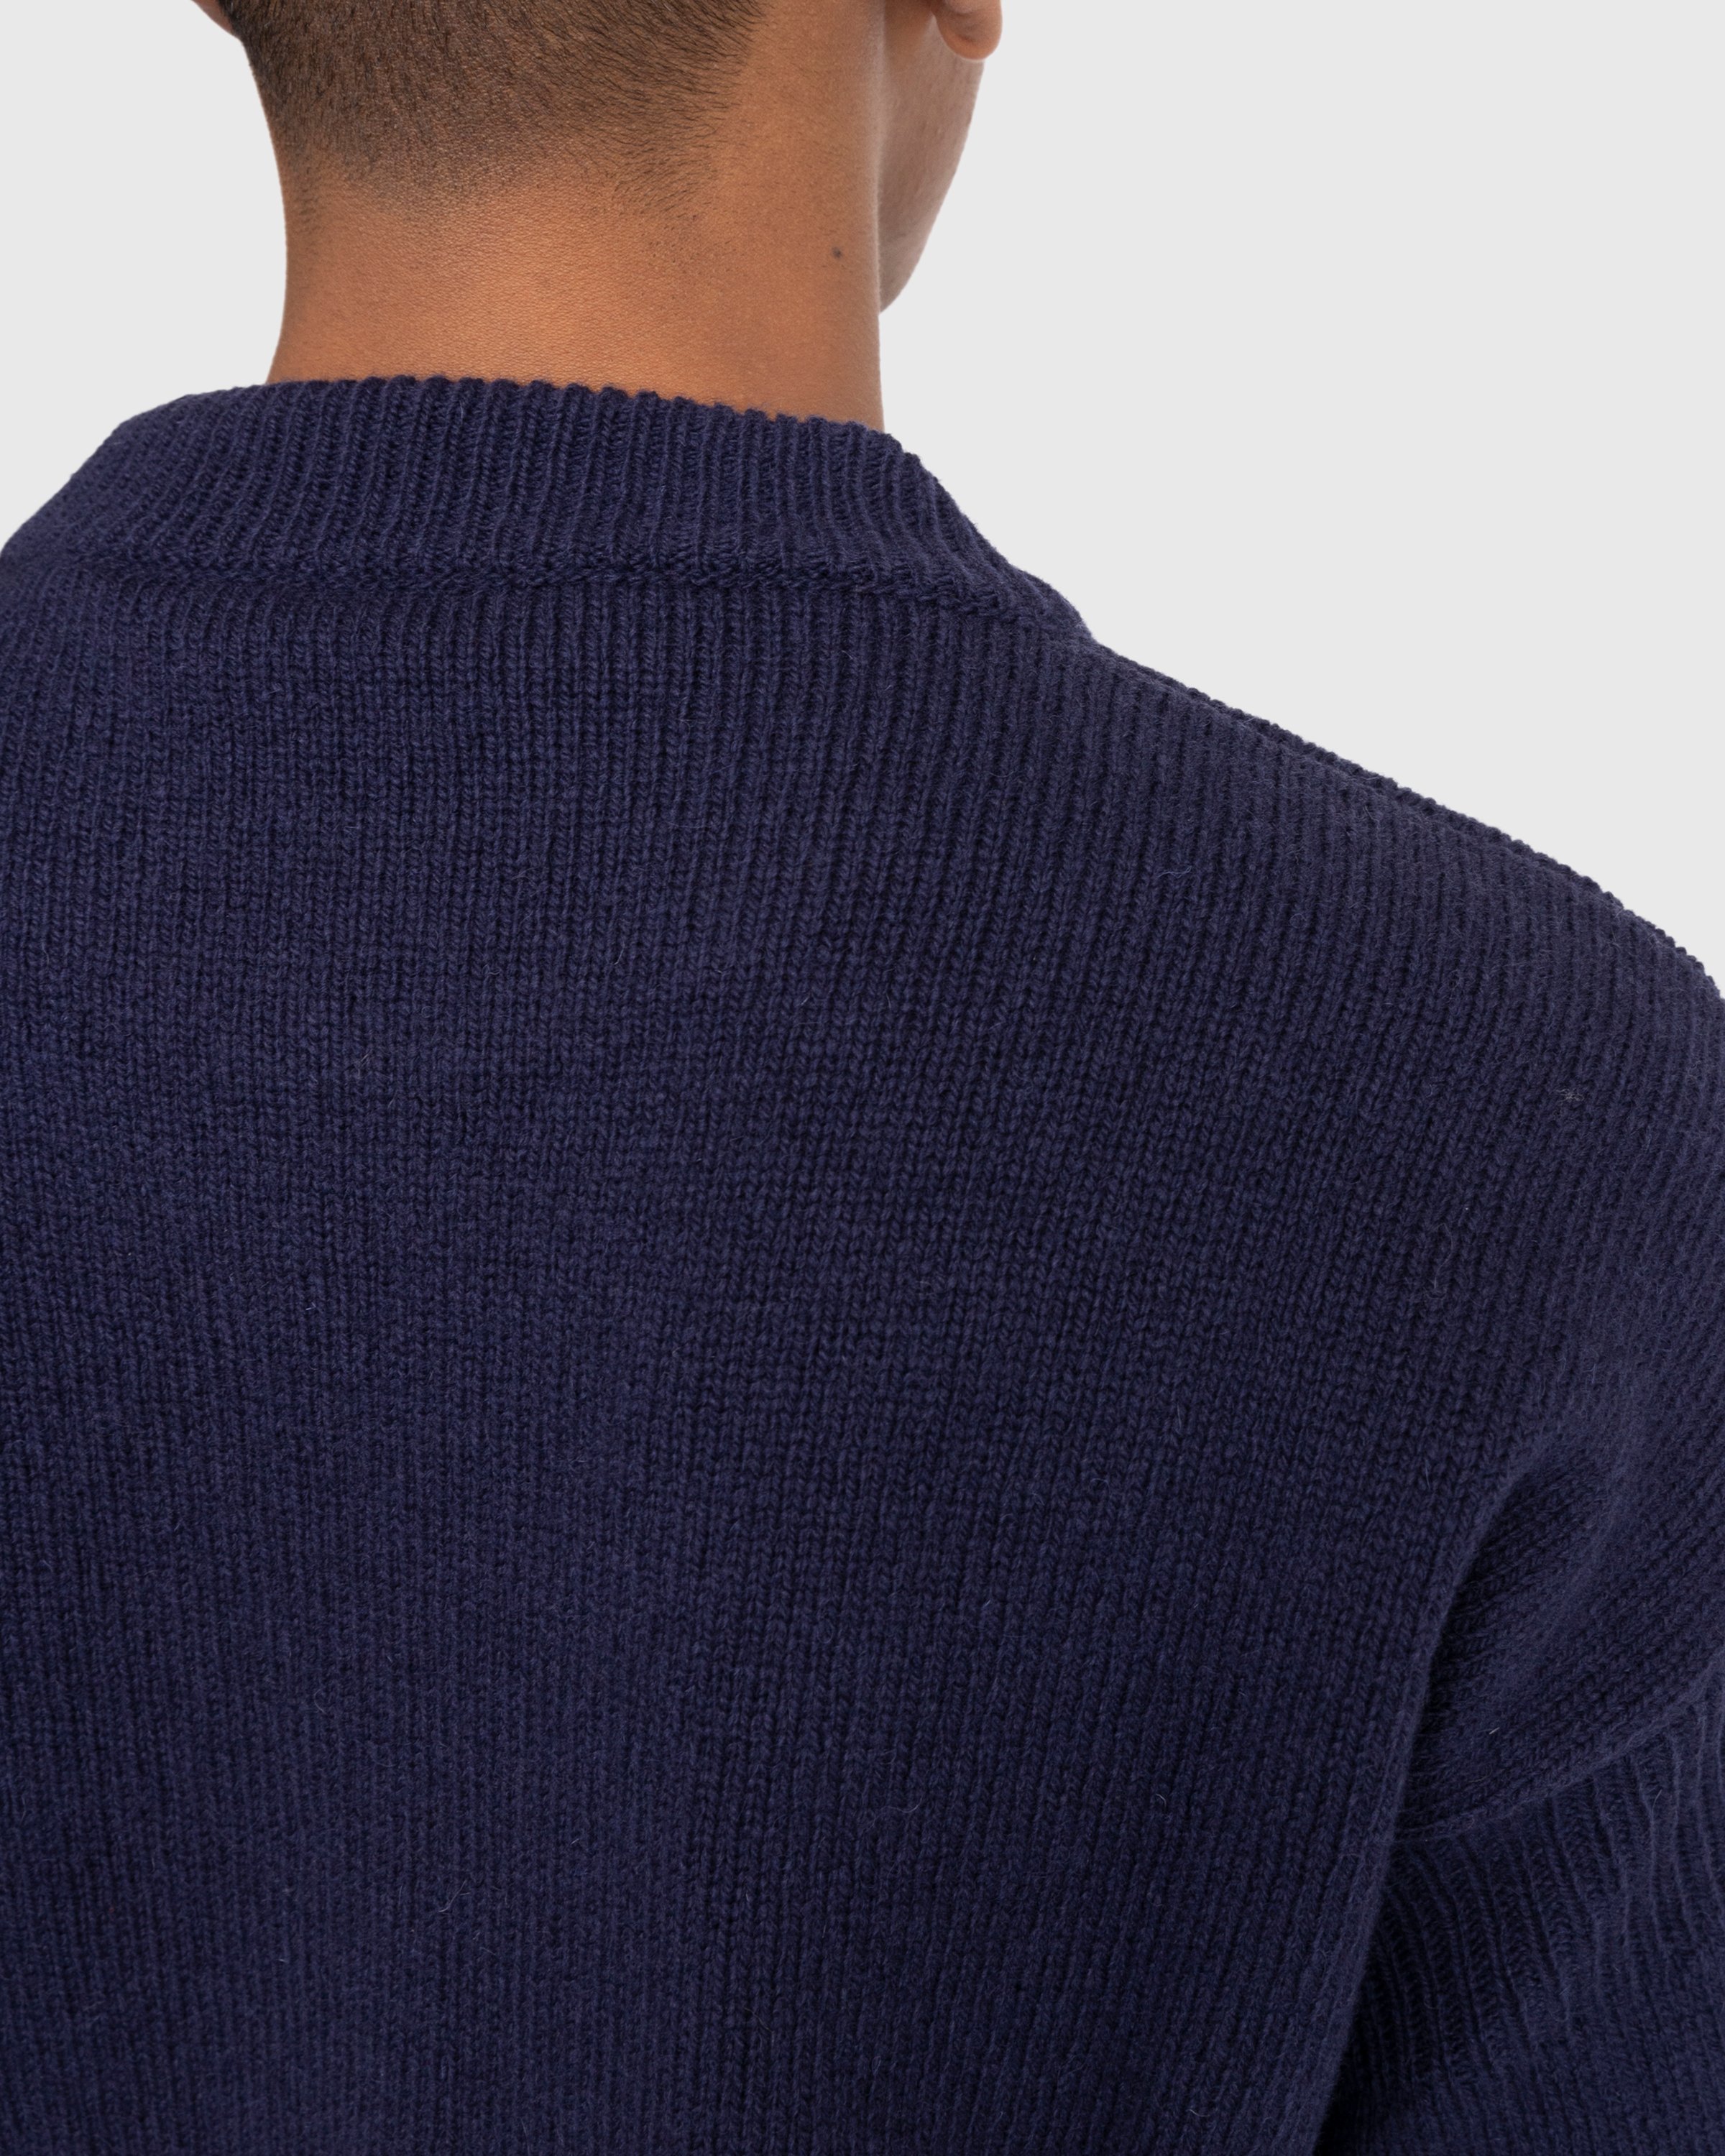 Marni - Roundneck Sweater - Clothing - Blue - Image 6